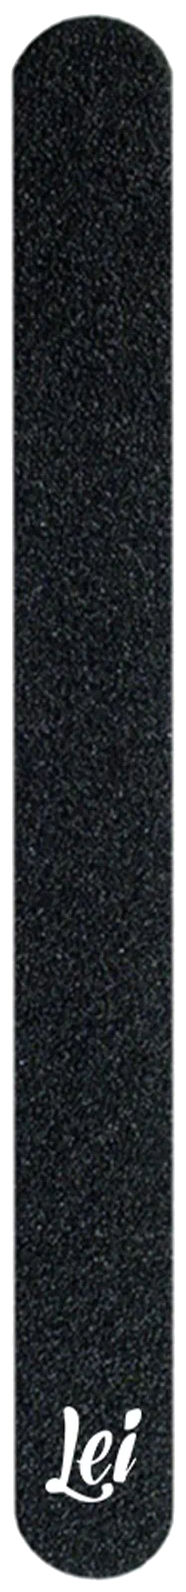 Lei пилка шлифовальная korn-05, черный